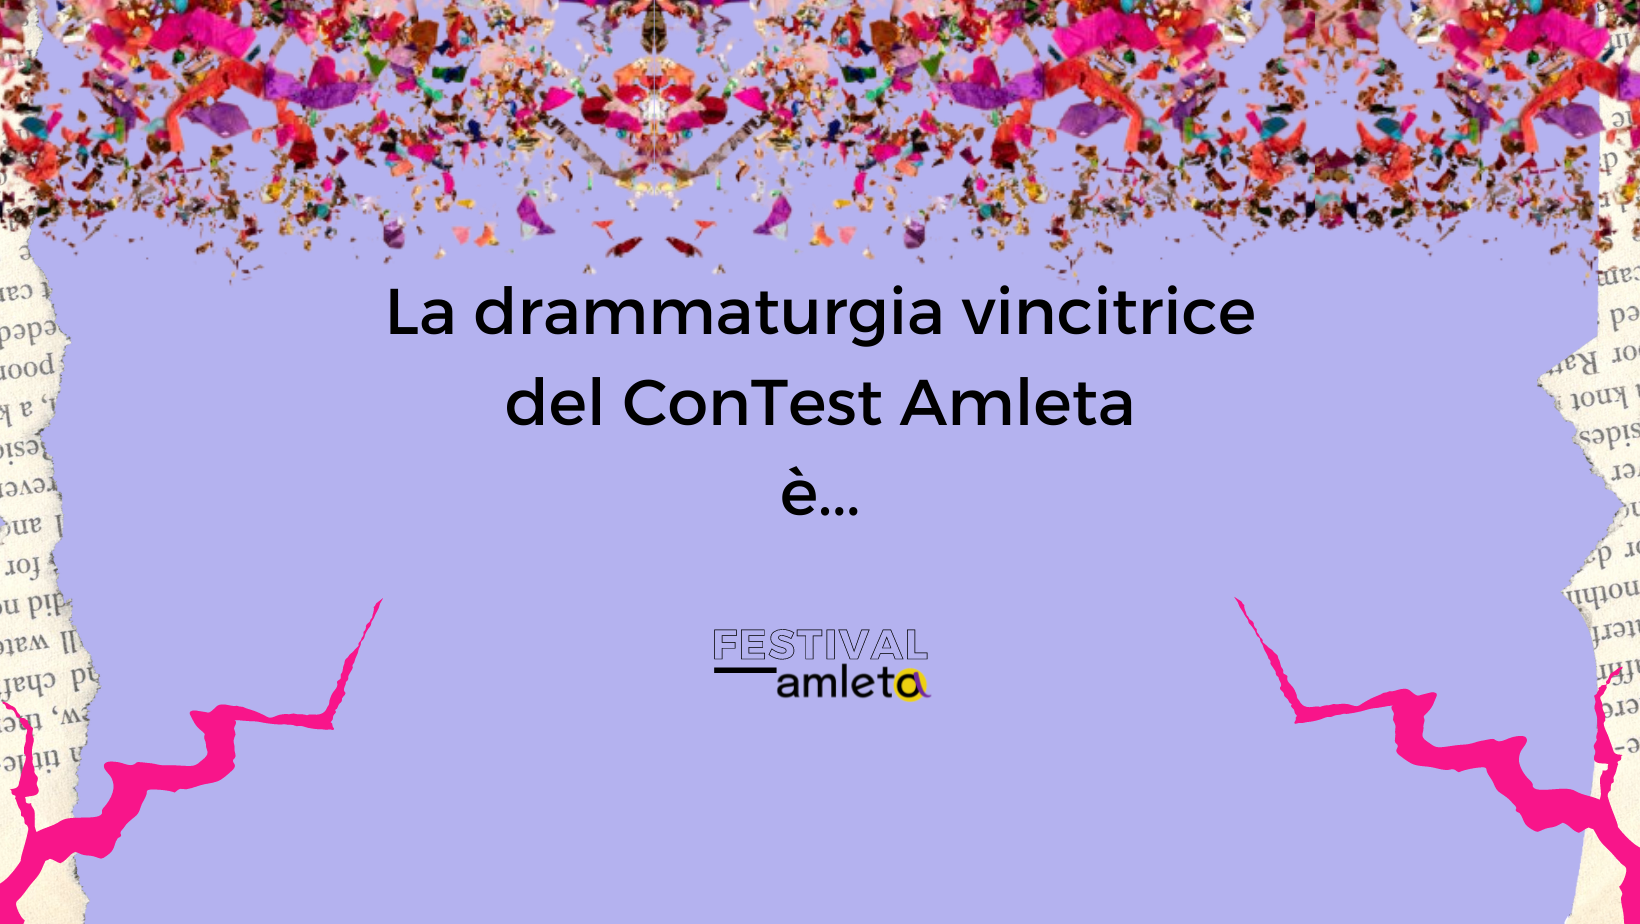 La drammaturgia vincitrice del ConTest Amleta